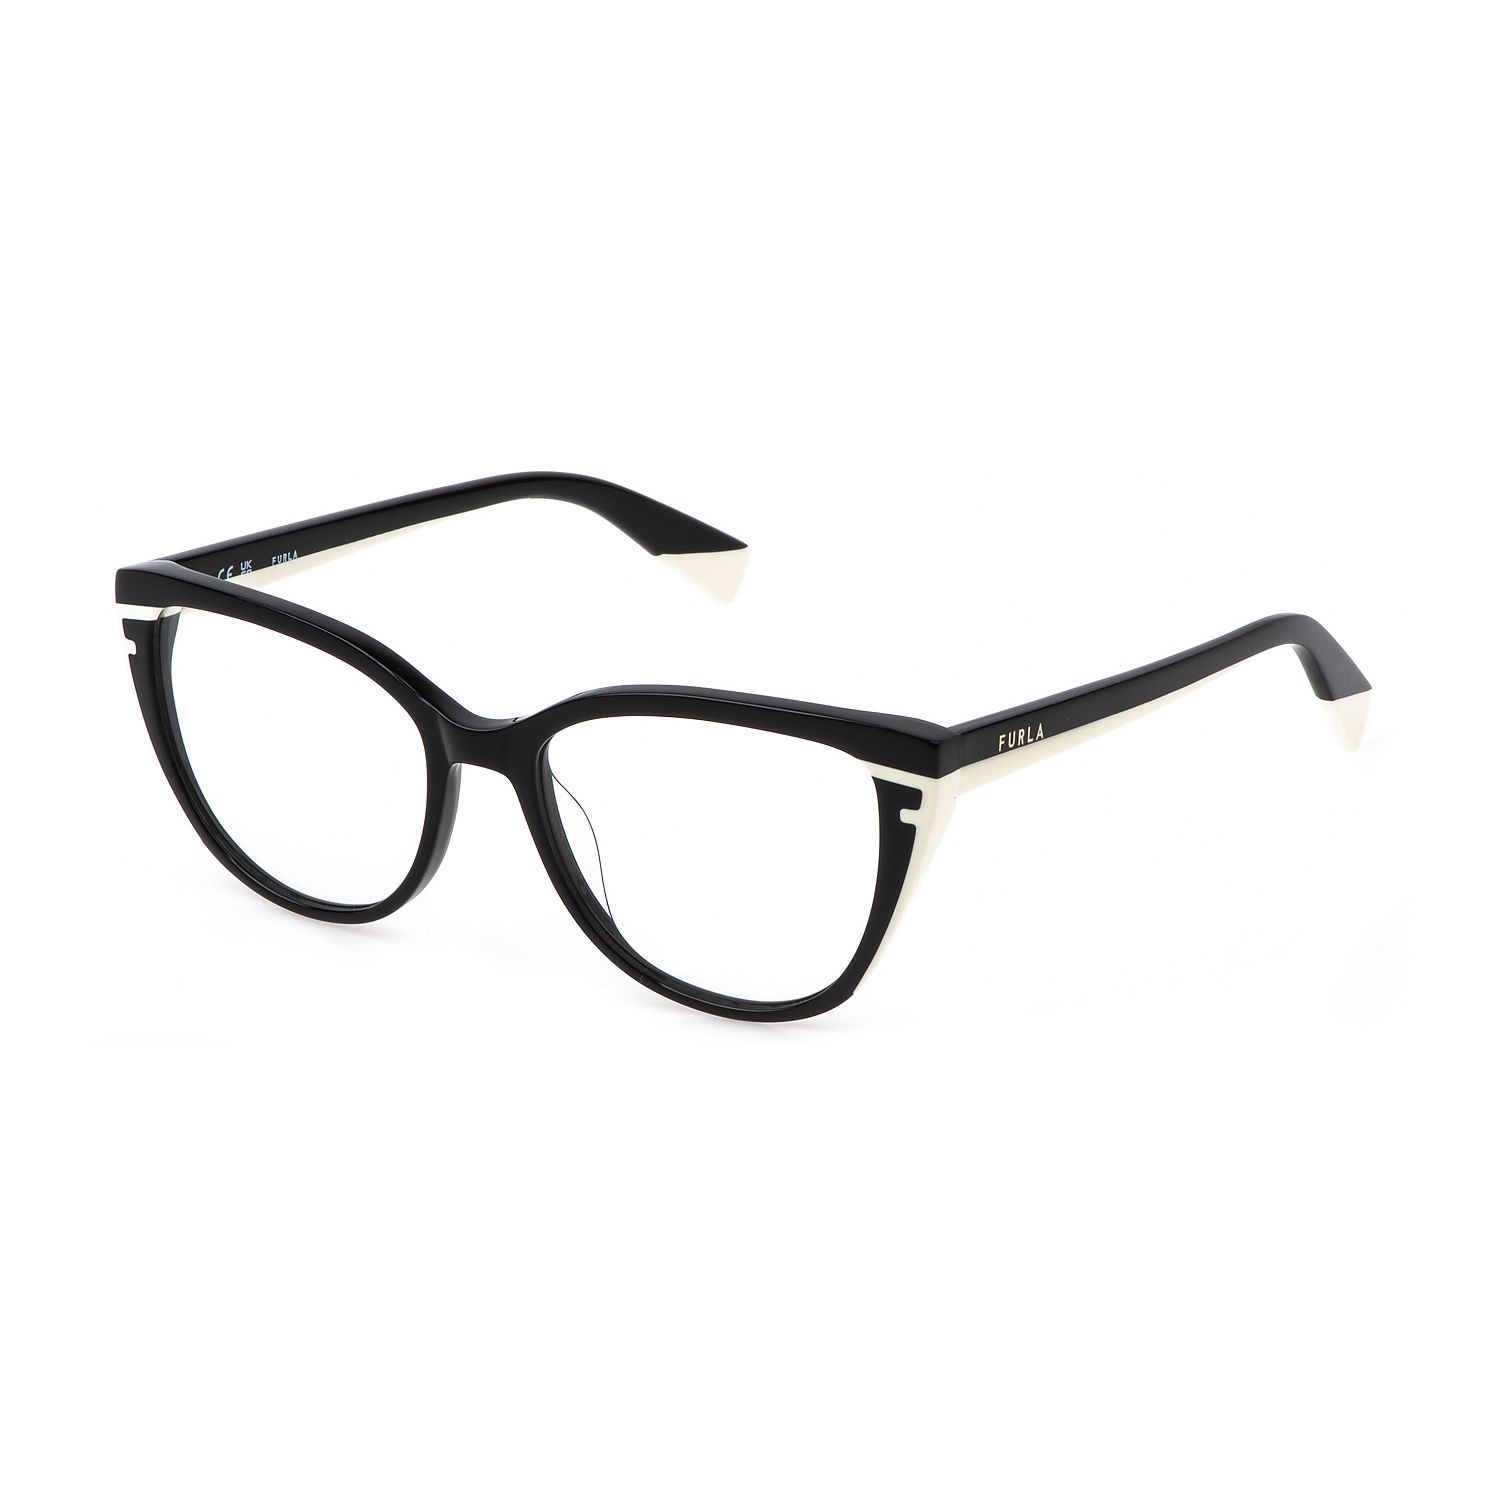 VFU765 Butterfly Eyeglasses 0700 - size 53